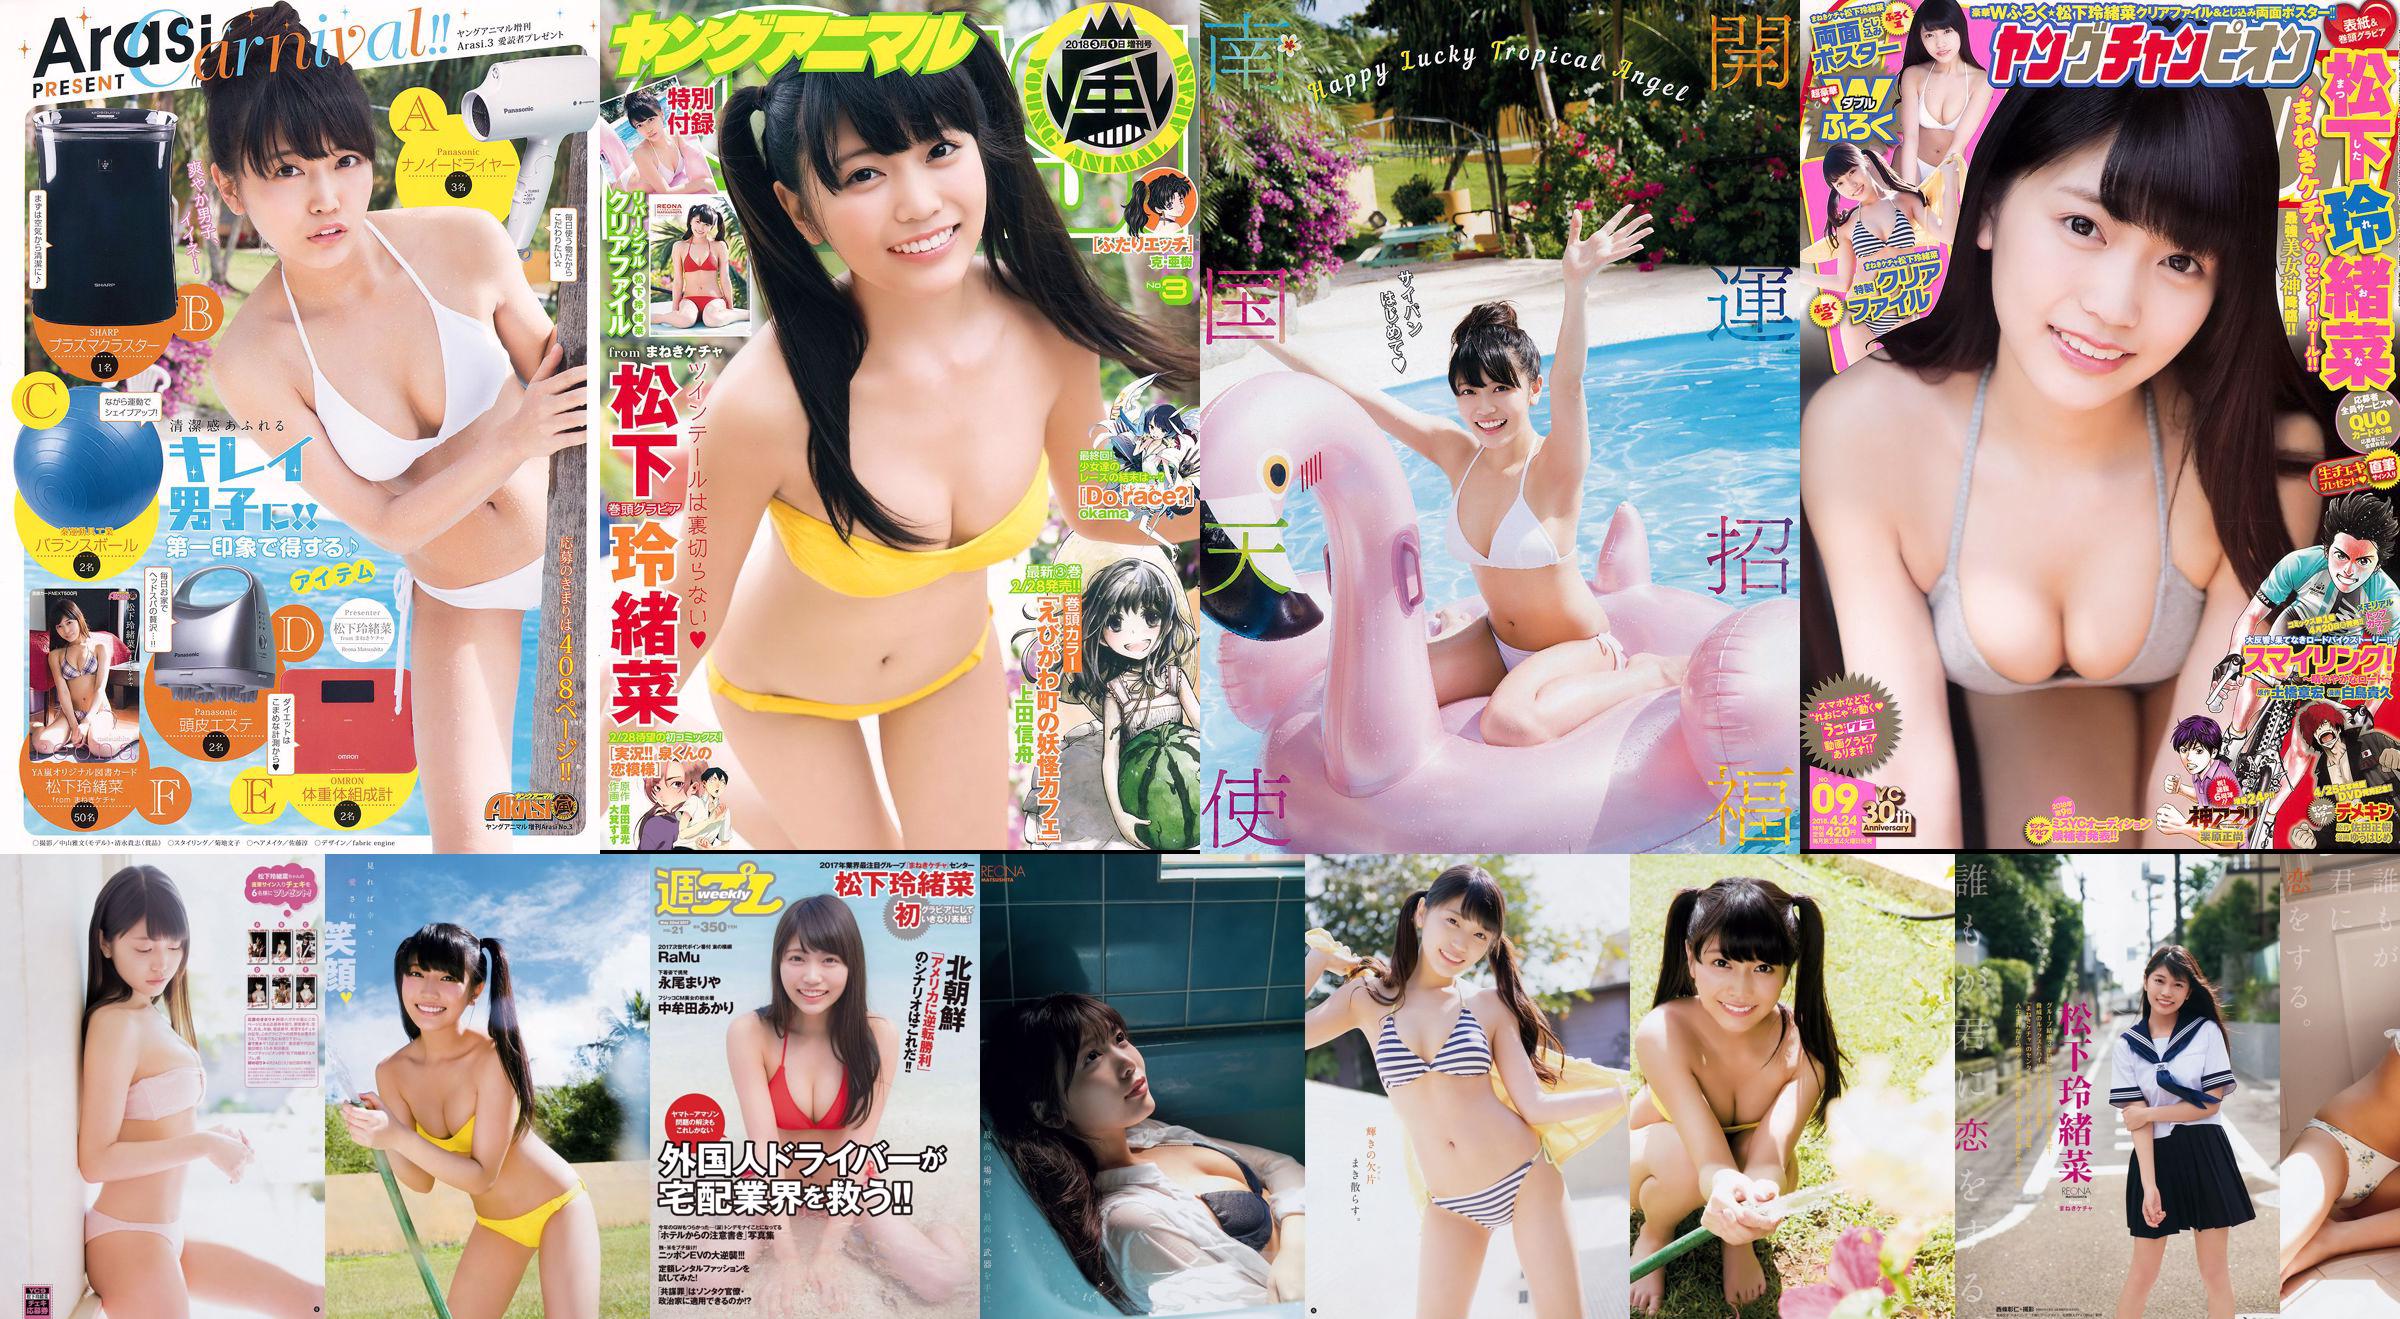 Reona Matsushita RaMu Akari Takamuta Mariya Nagao Suzuka Akimoto Michiko Tanaka Hazuki Nishioka [Weekly Playboy] 2017 No.21 Photograph No.627a9c หน้า 6